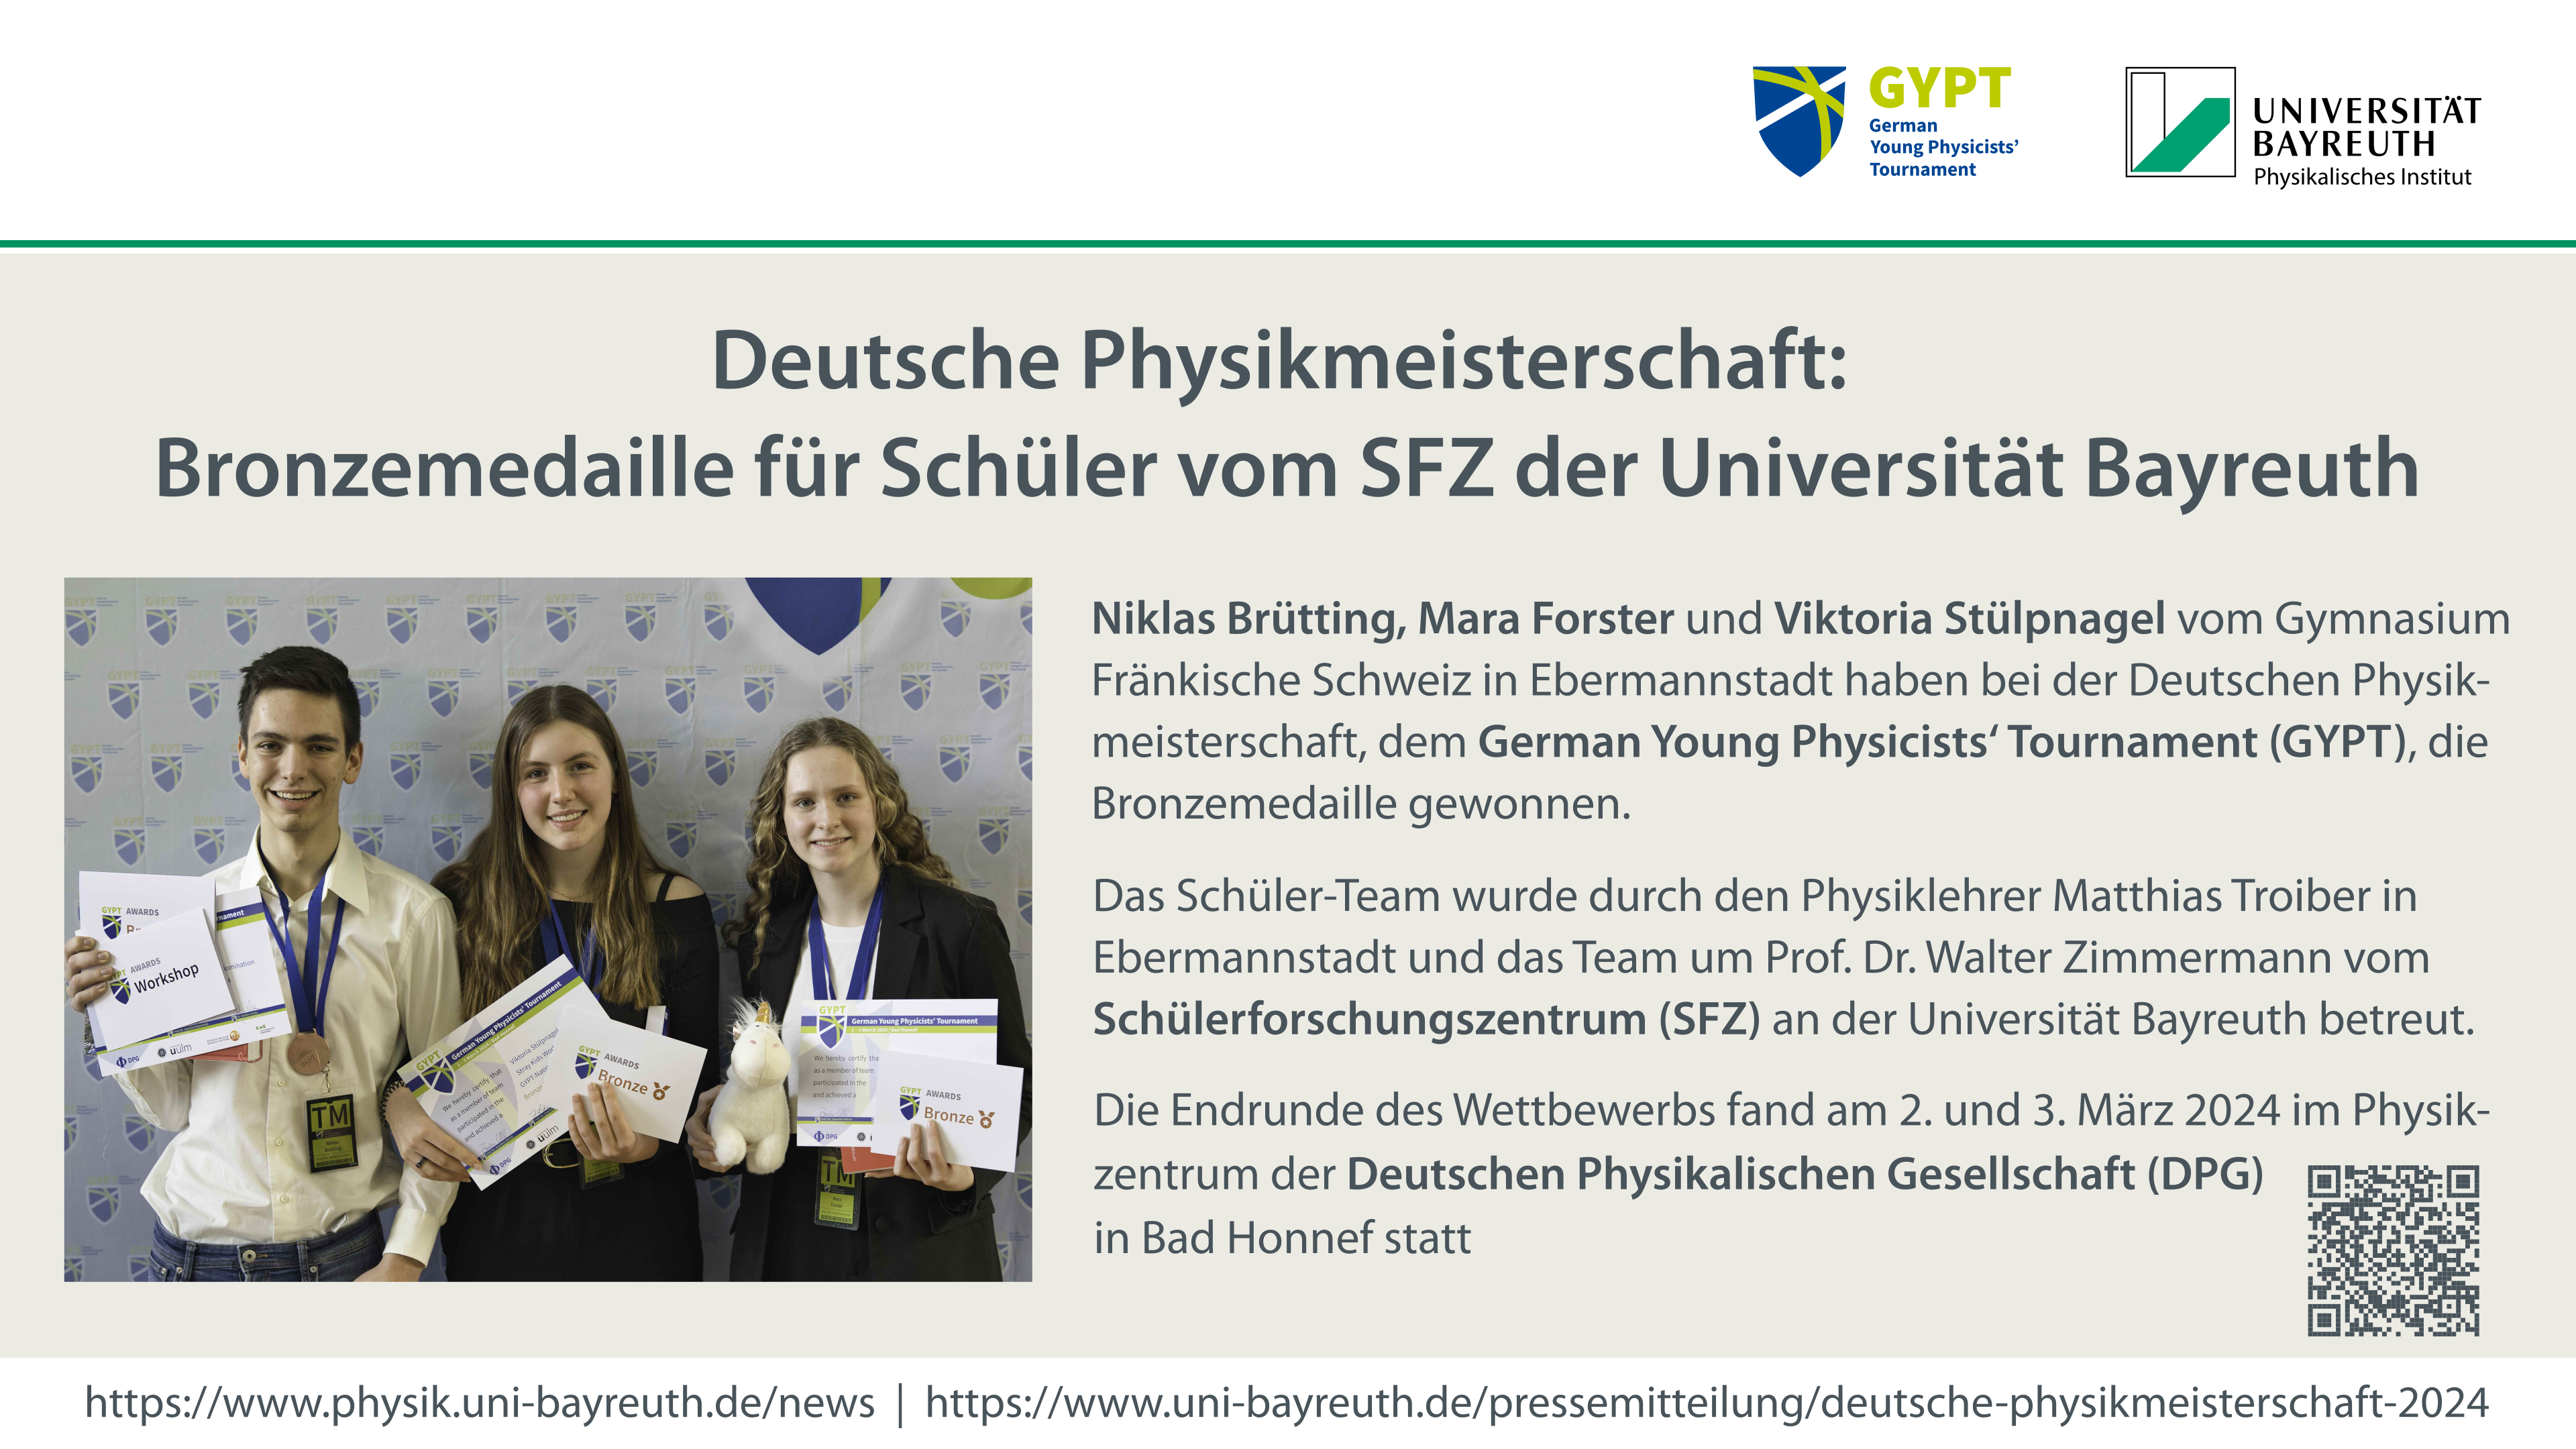 Deutsche Physikmeisterschaft: Bronzemedaille für Schüler vom SFZ der Universität Bayreuth